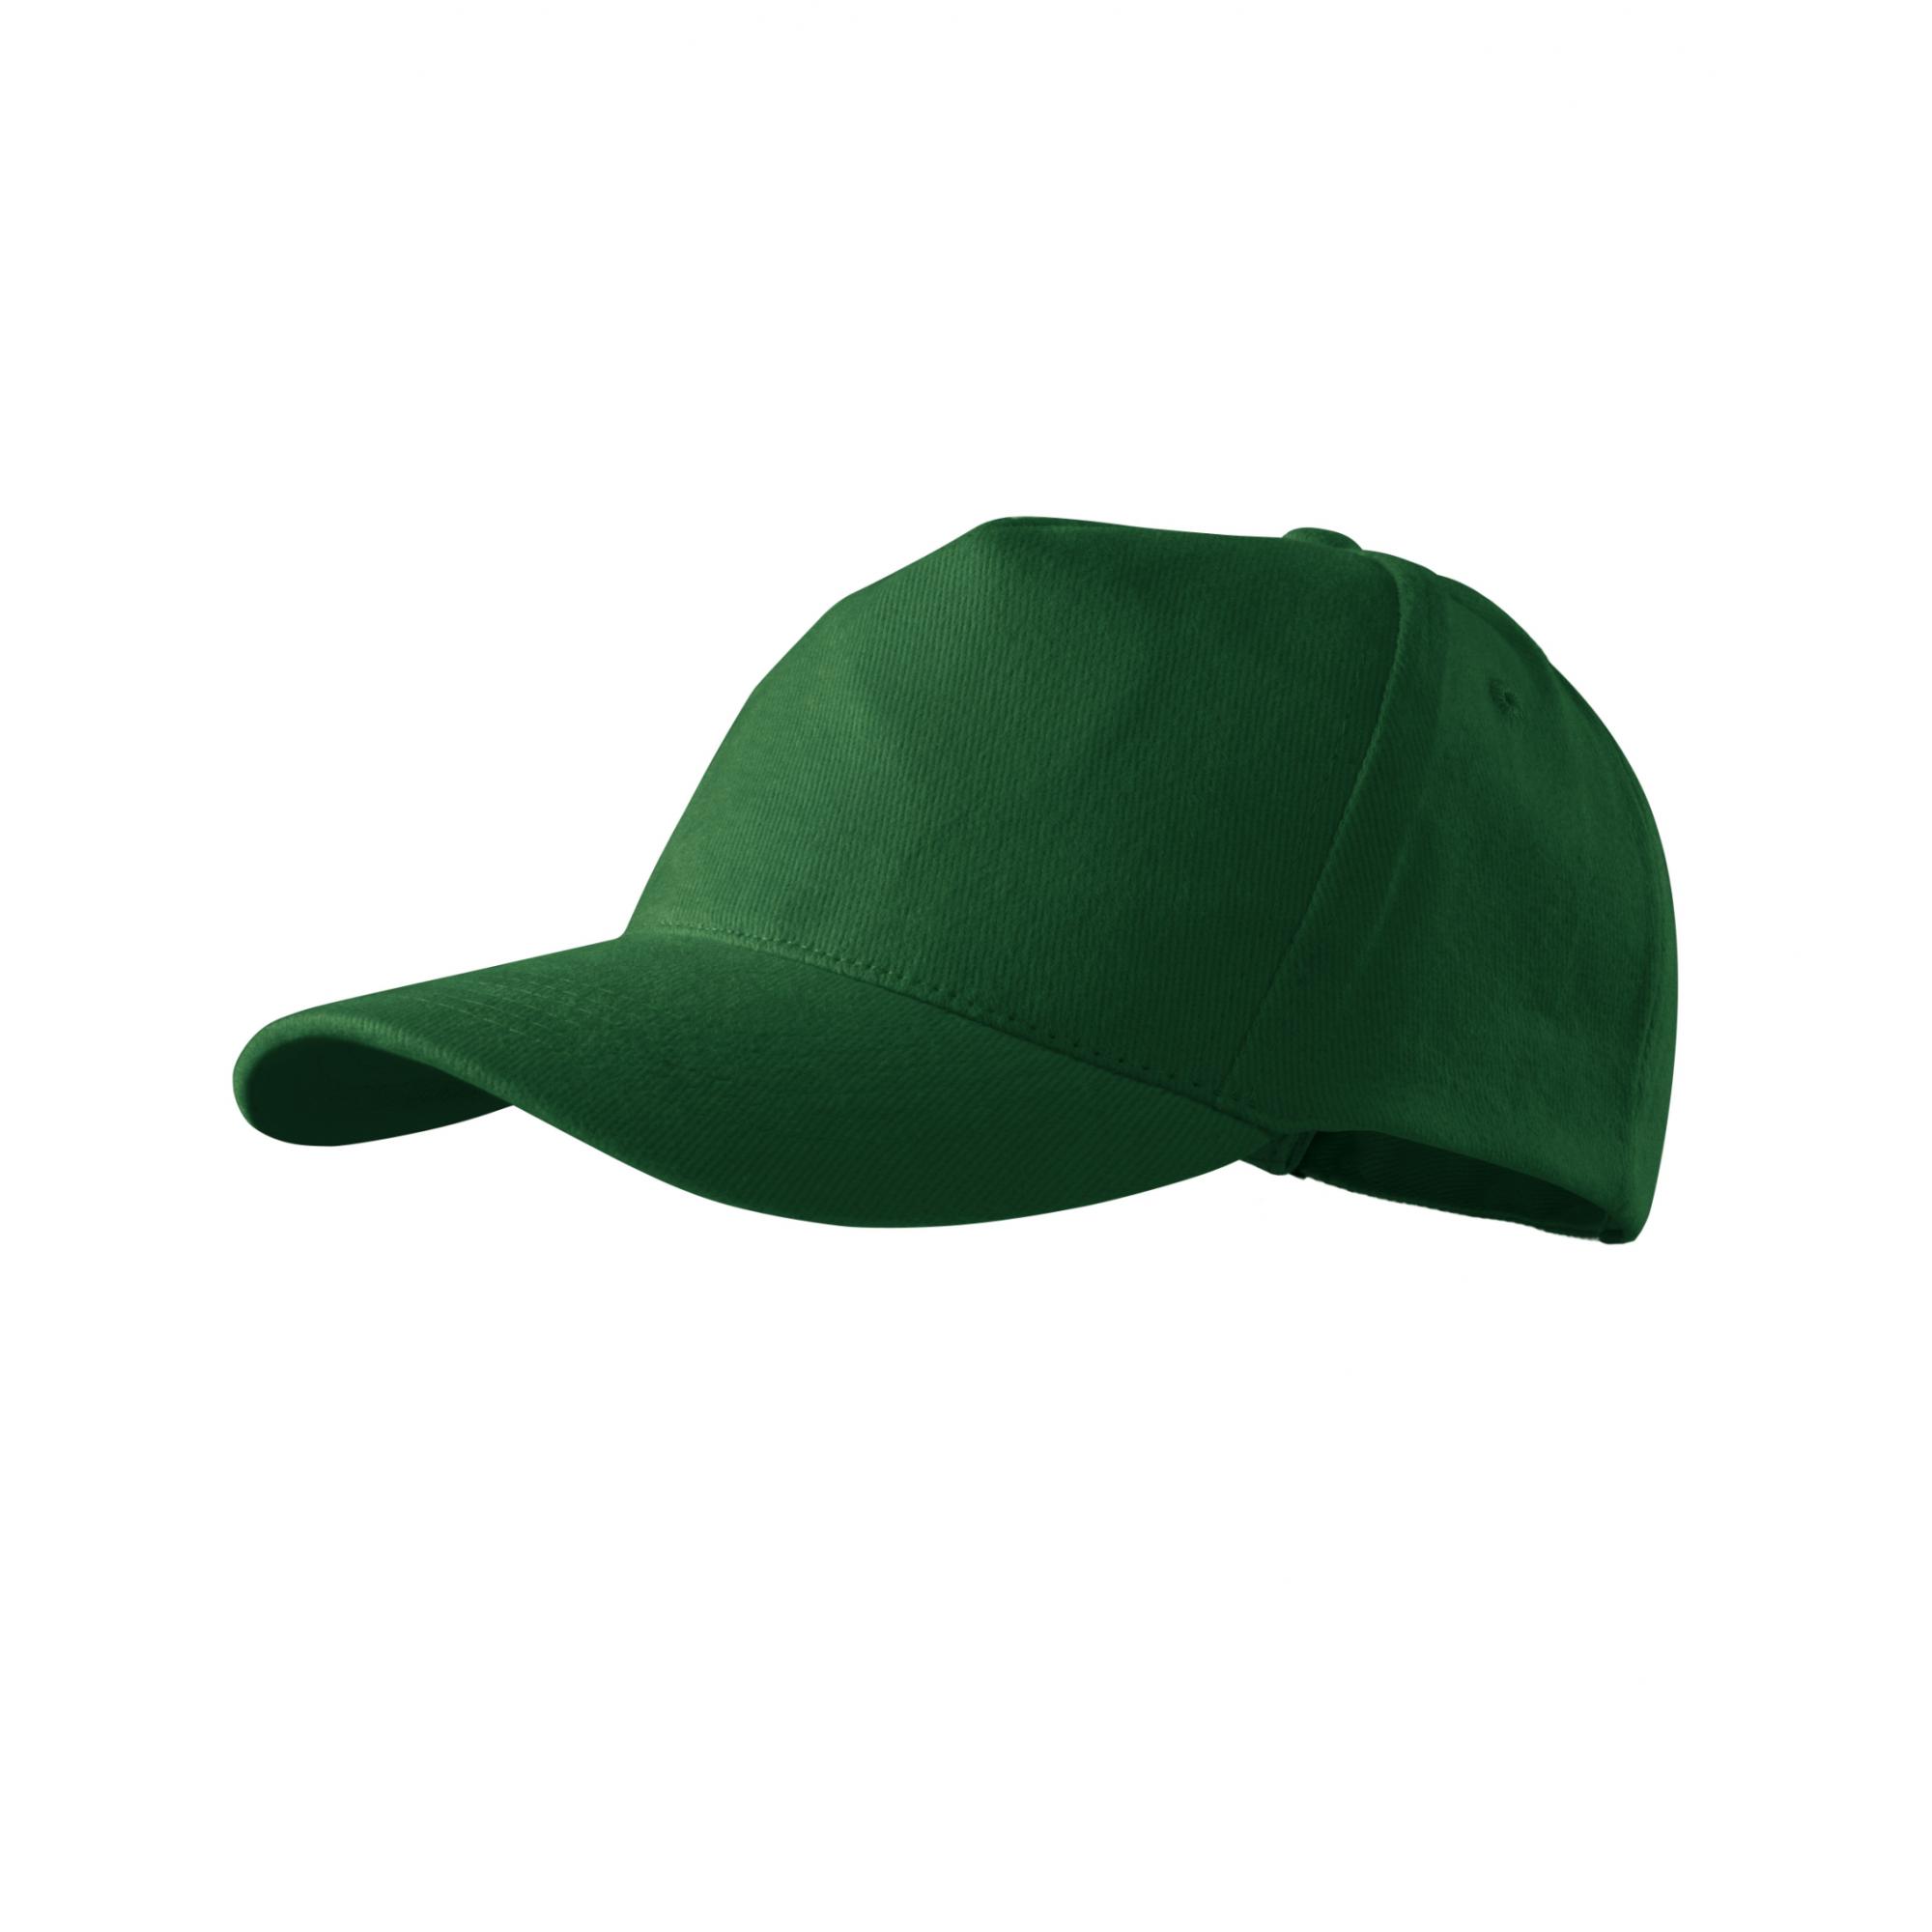 Şapcă unisex 5P 307 Verde sticla Marime universala